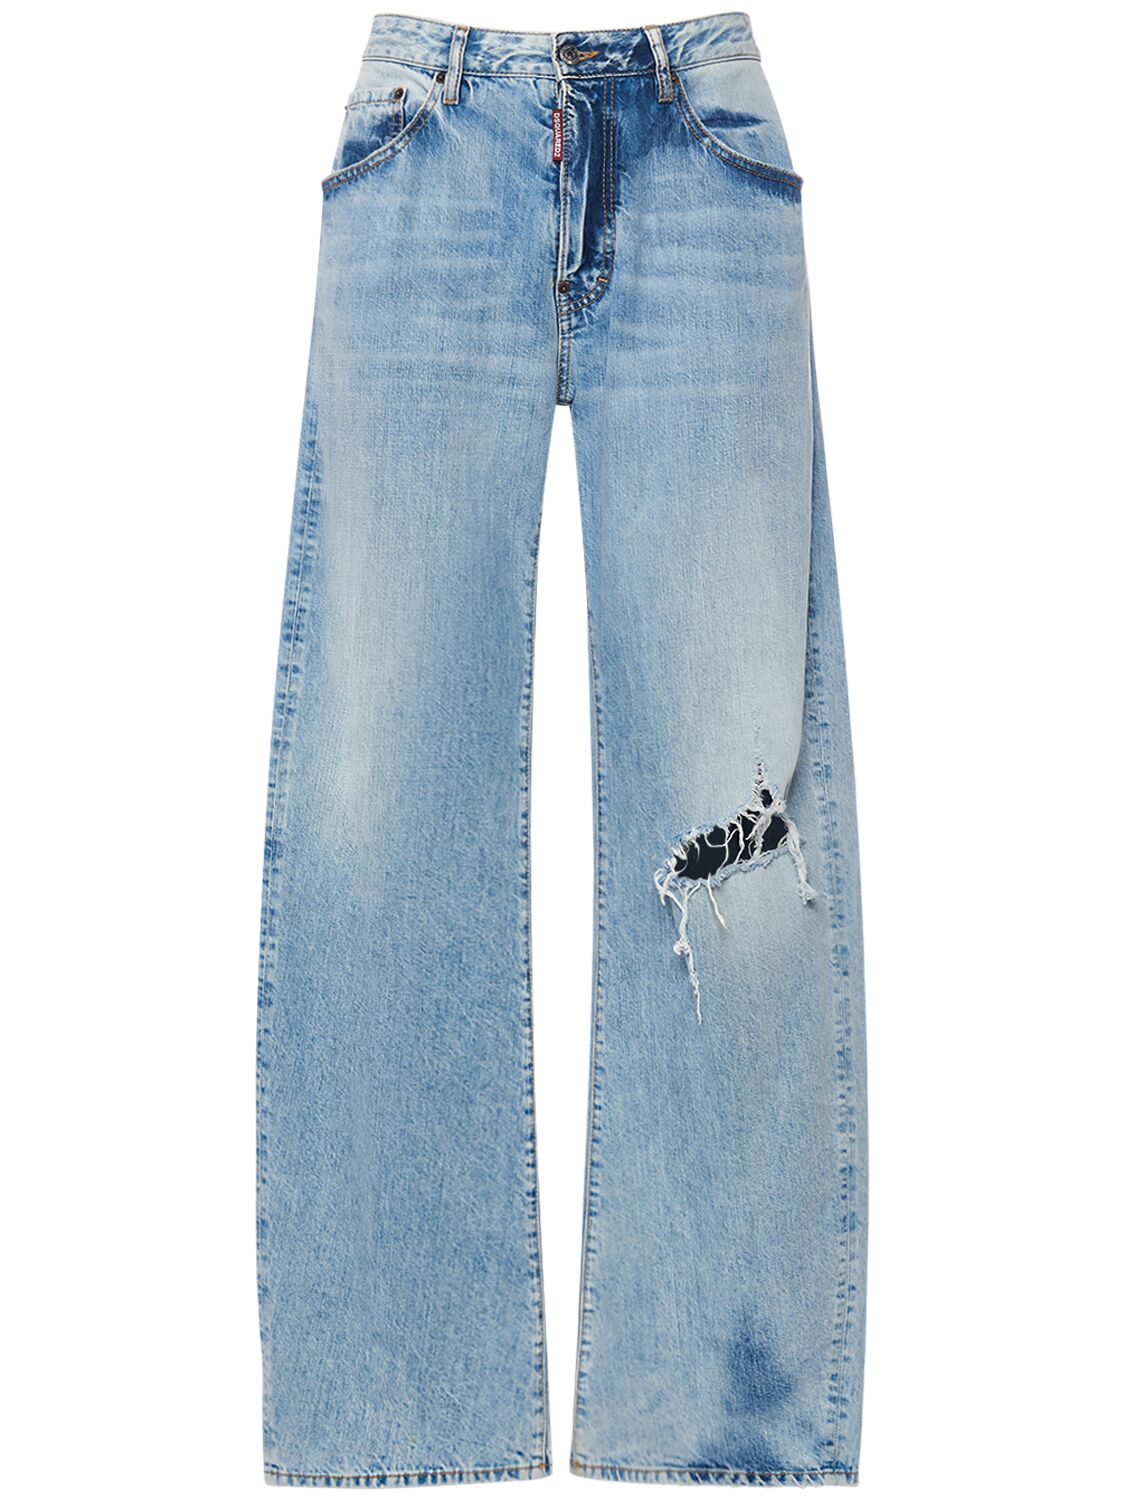 Image of Big Fit Cotton Denim Jeans